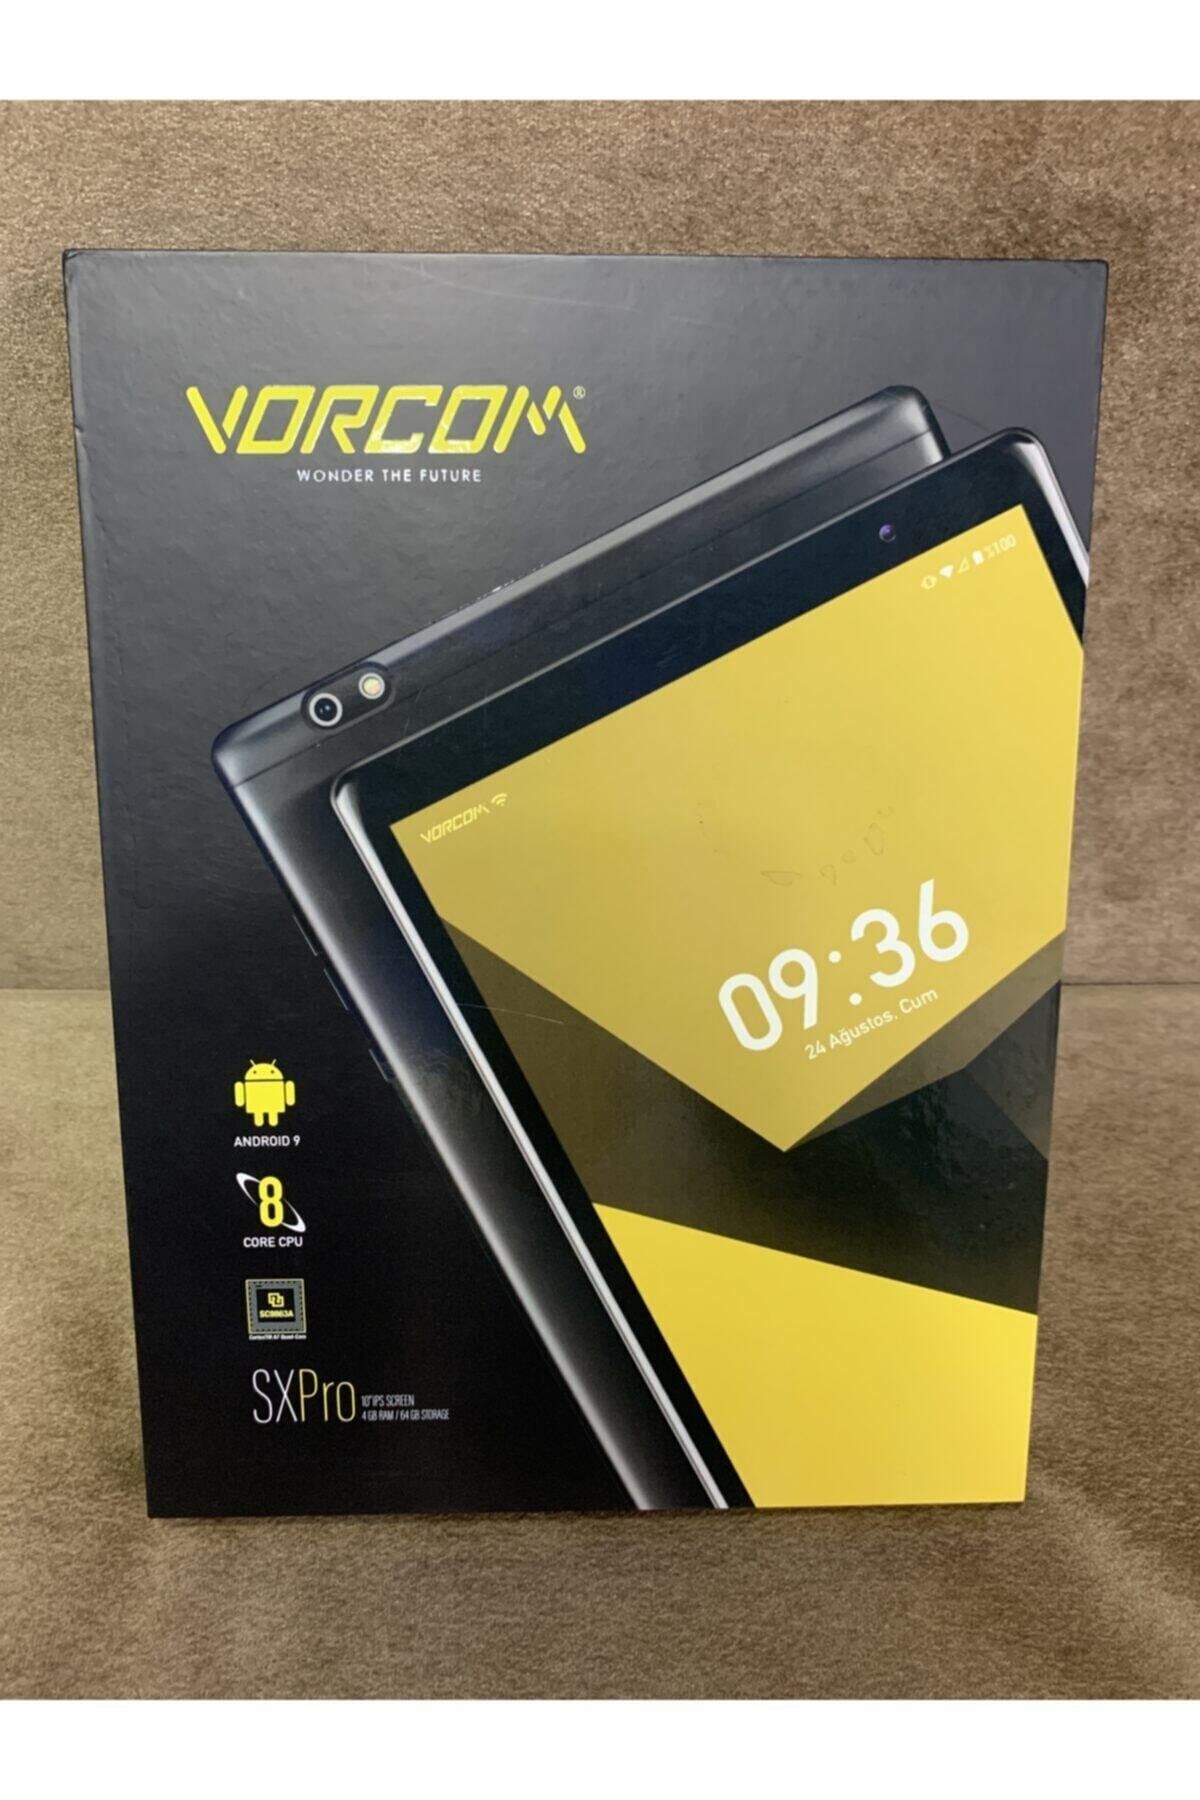 Vorcom Sx Pro 4gb Ram 64 Gb Hafızalı 10 Inch Androıd 9.0 Ips Ekran